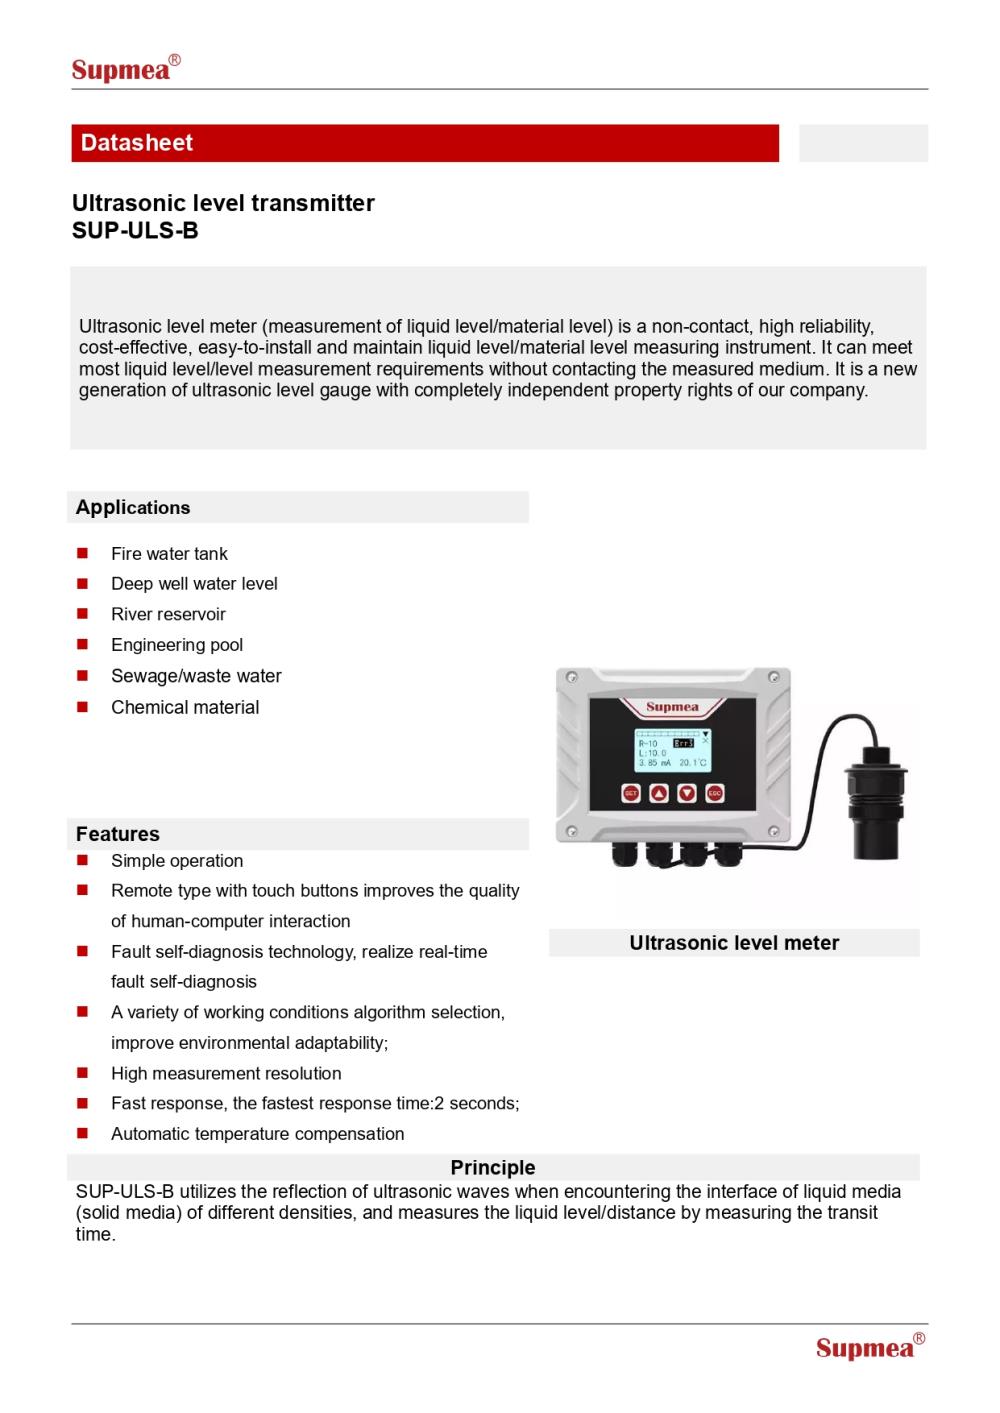  Ultrasonic level transmitter  อันตราโซนิควัดระดับน้ำและเคมี